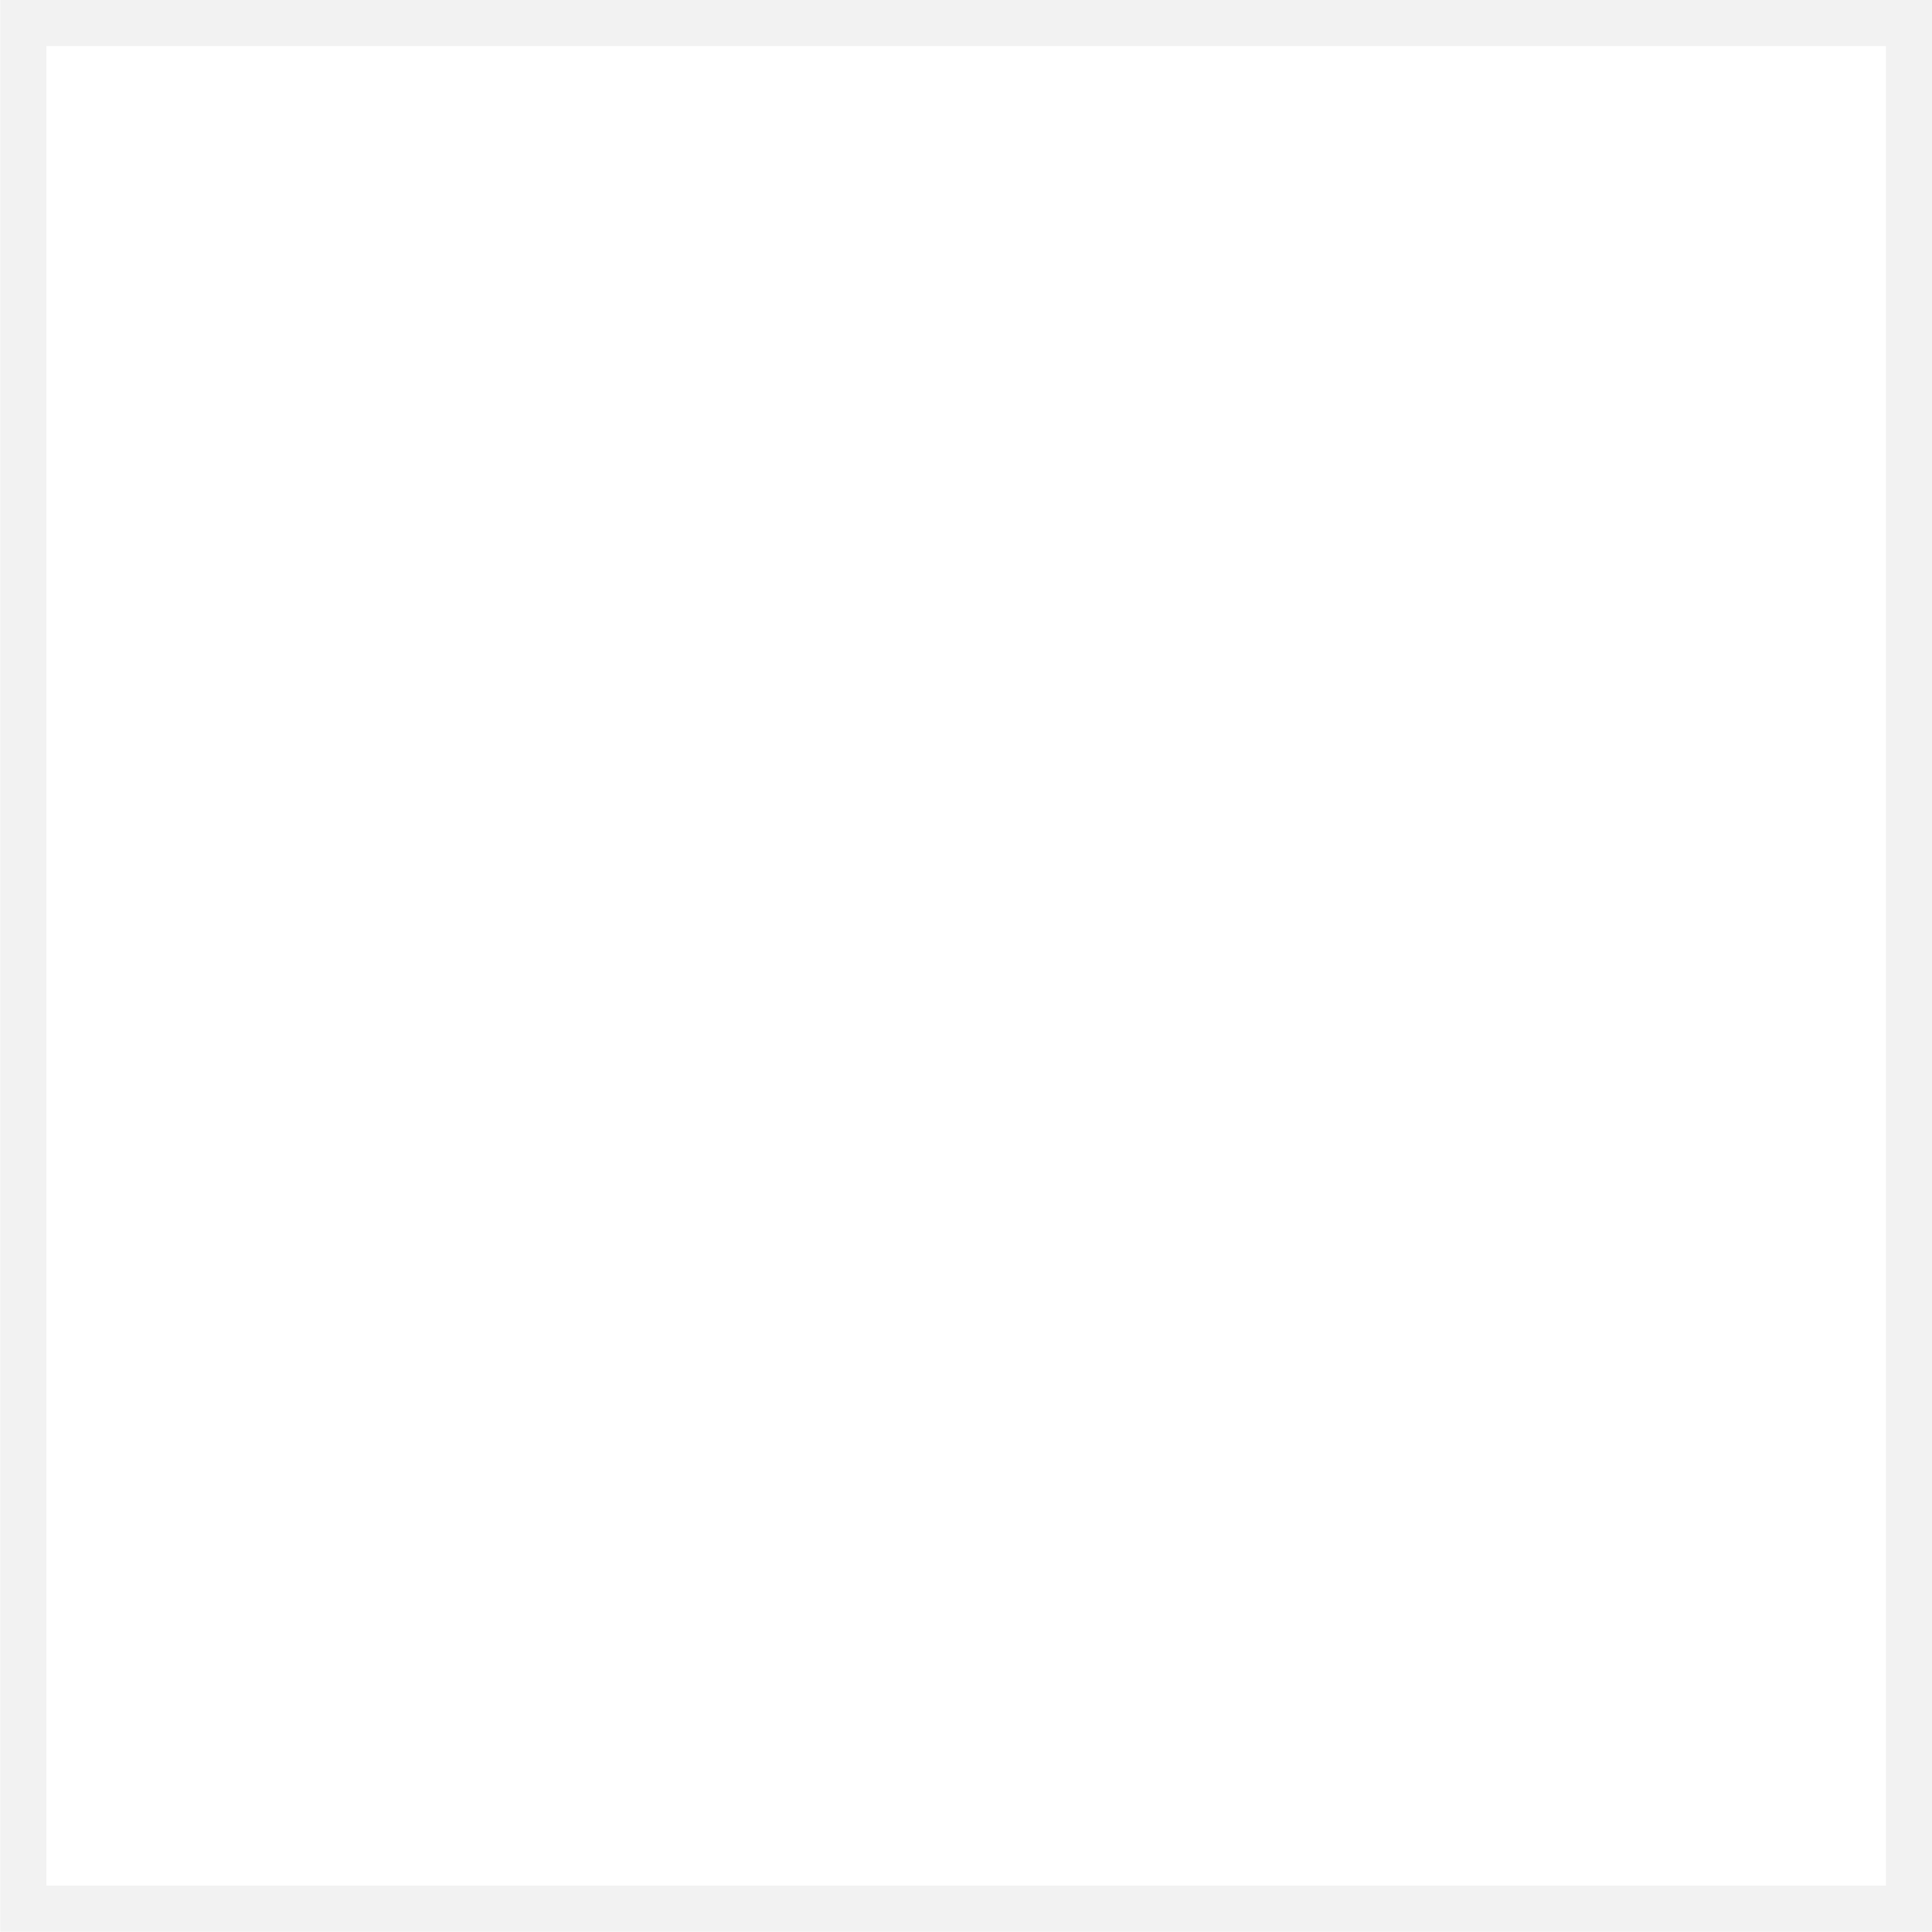 Matt & Nat Bakery